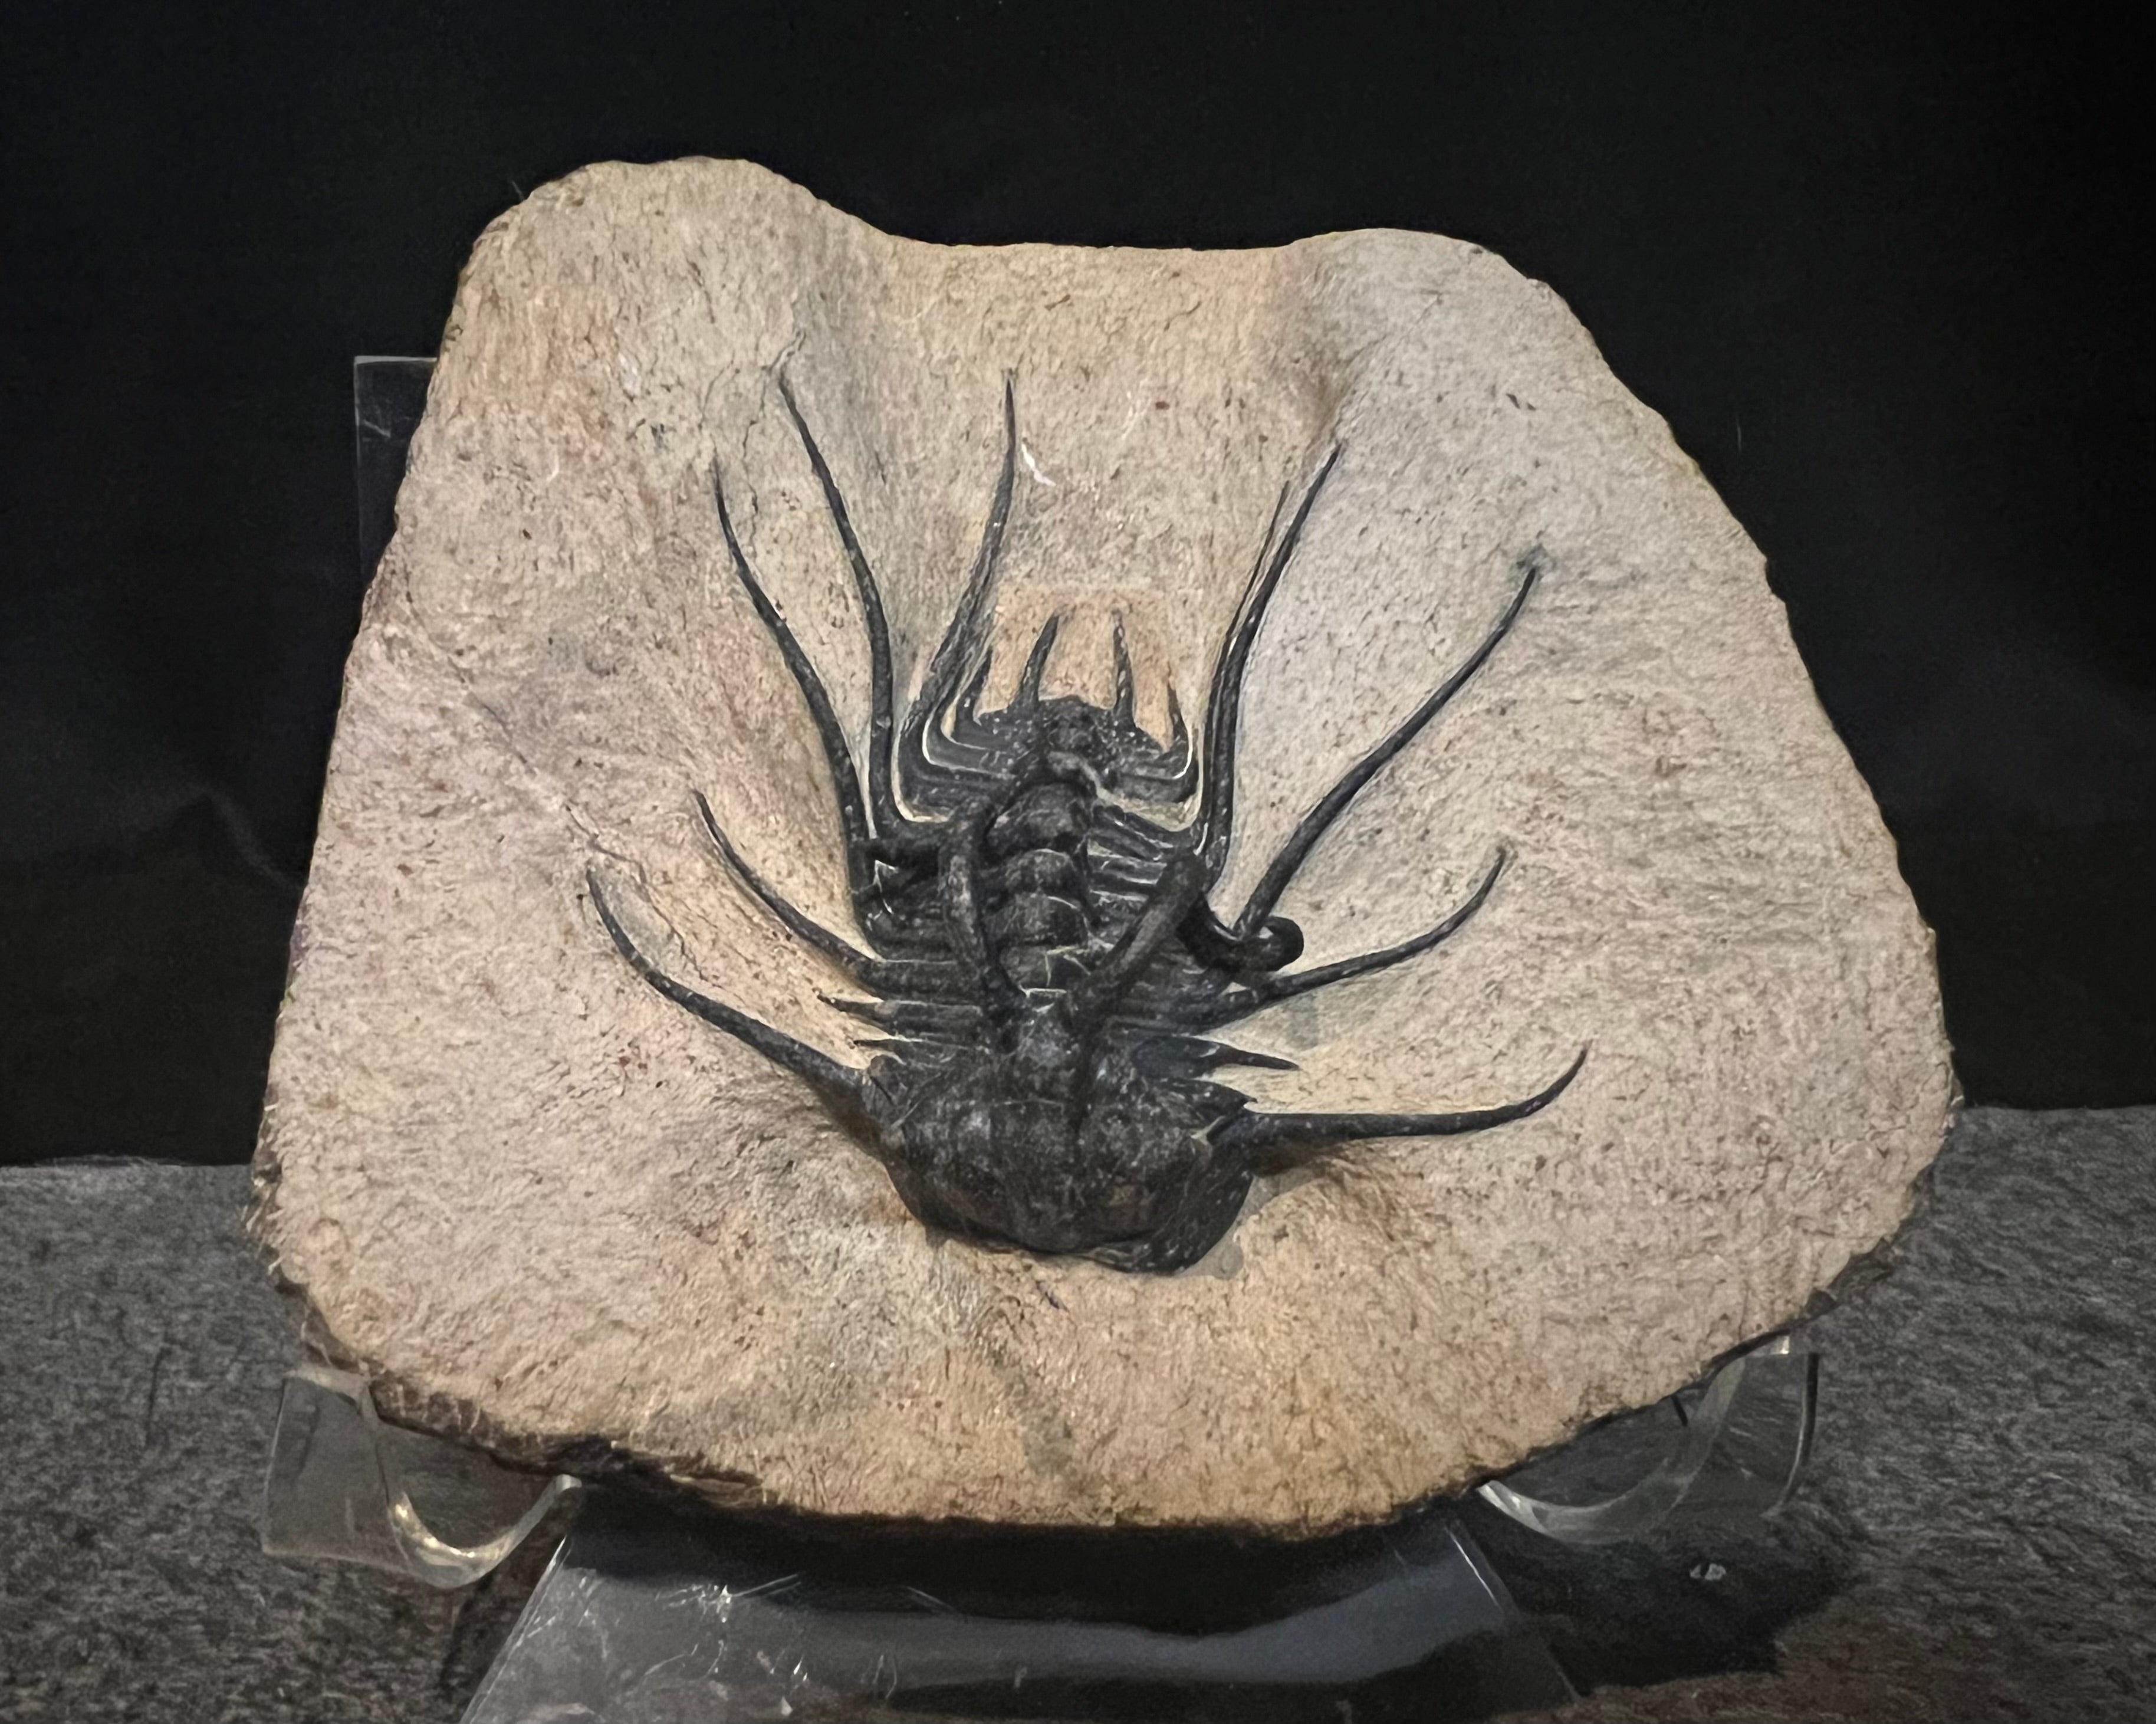 Trilobite specimen